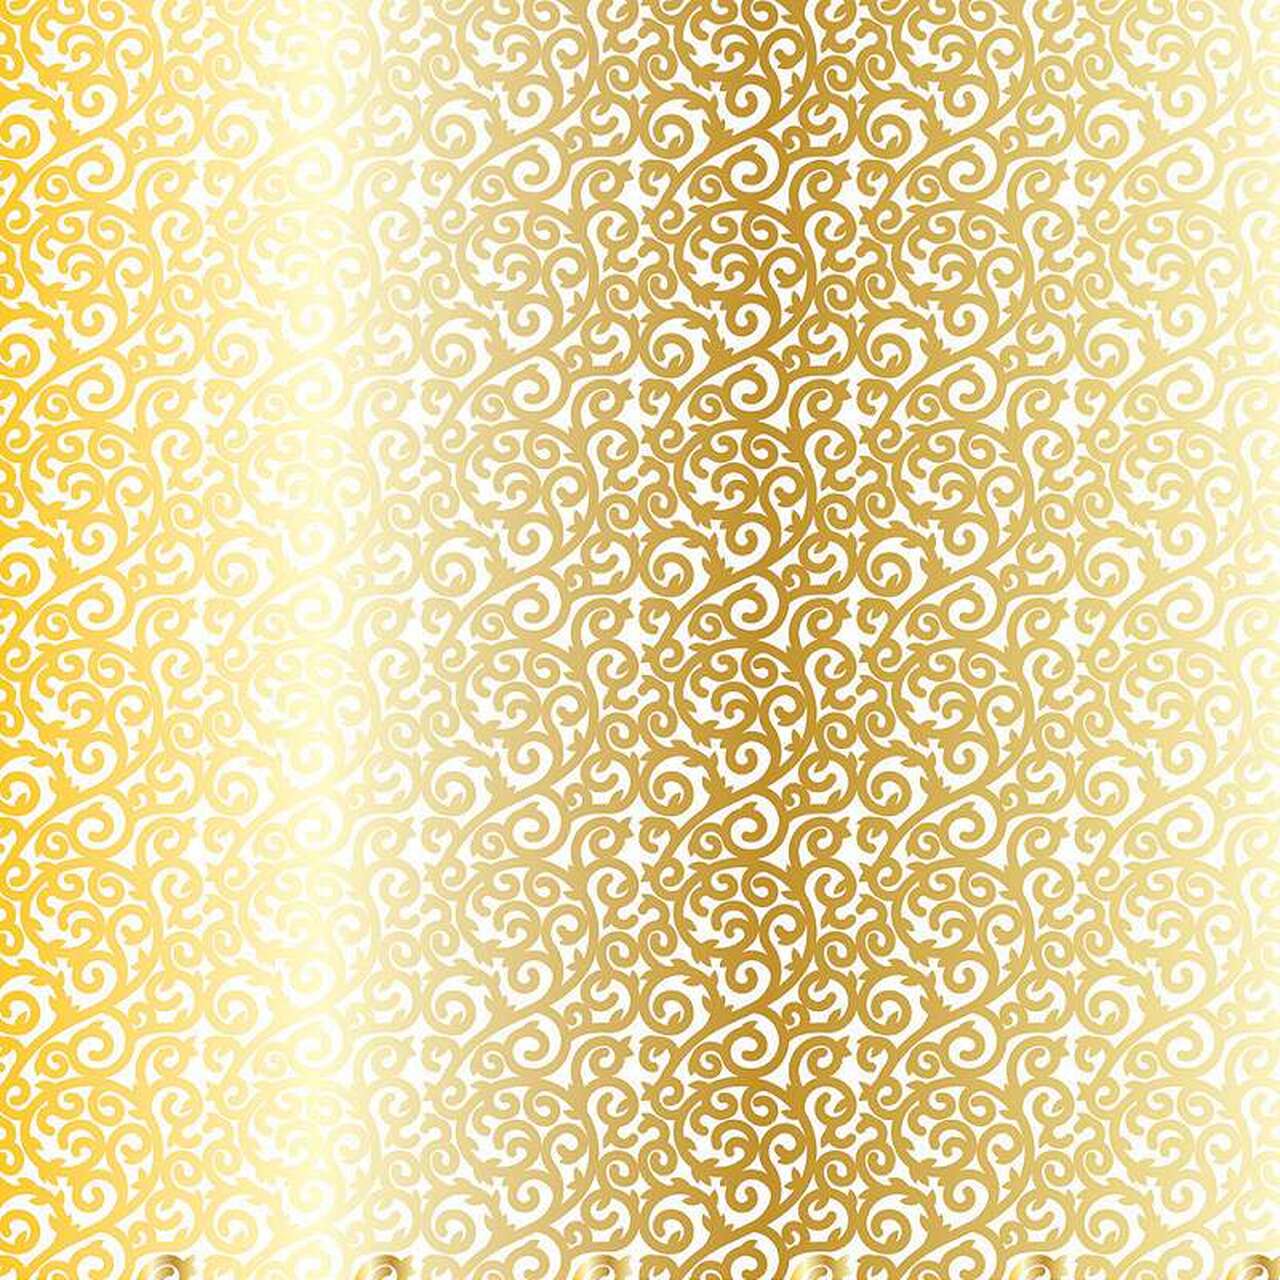 Gold Foil Lattice on White Cardstock